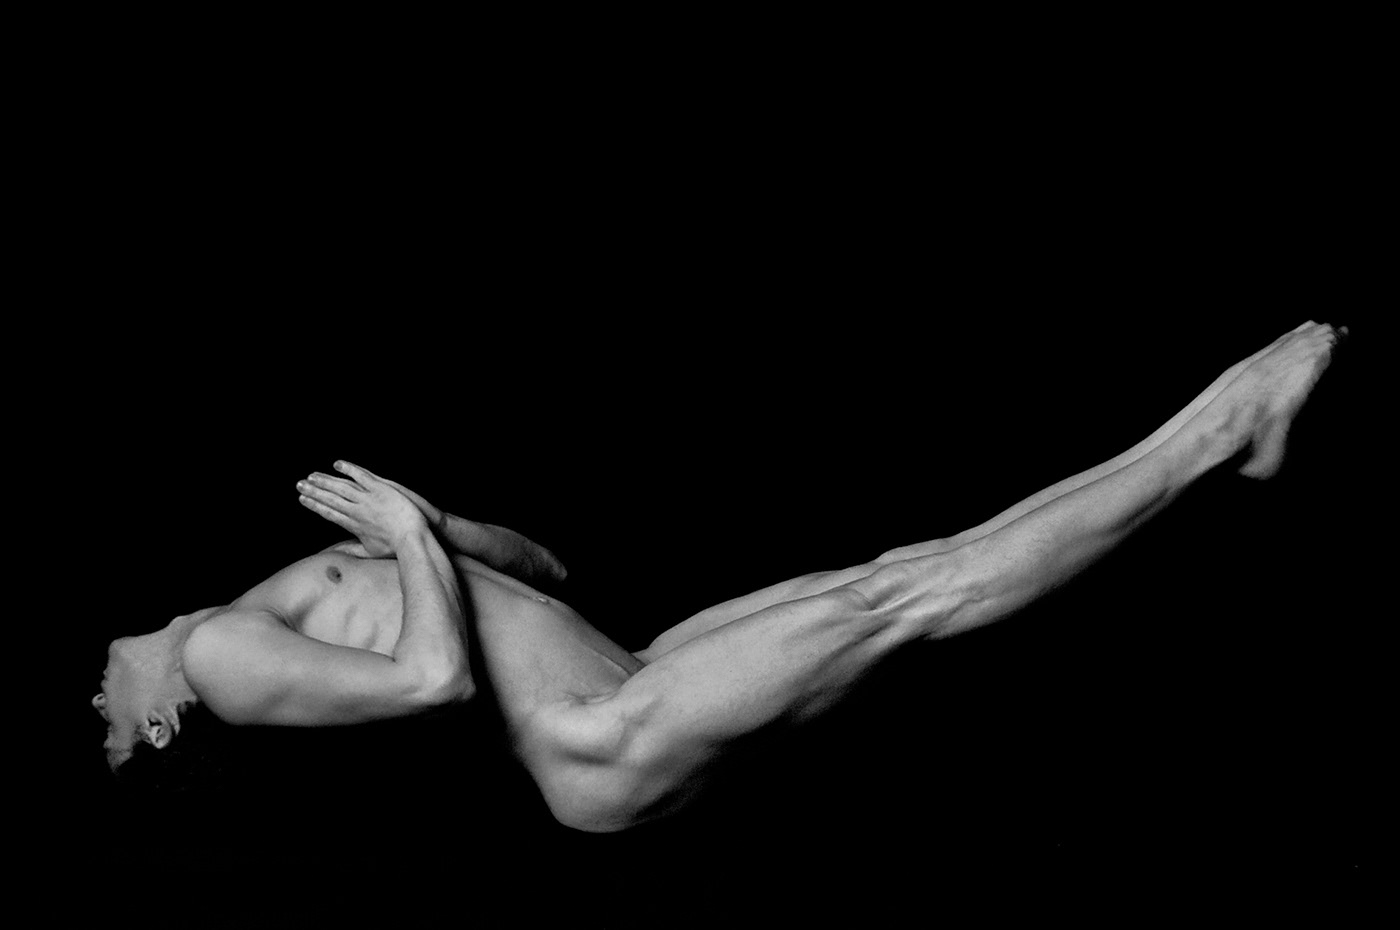 Yoga nu nude male homme corps body art noir et blanc Photographie